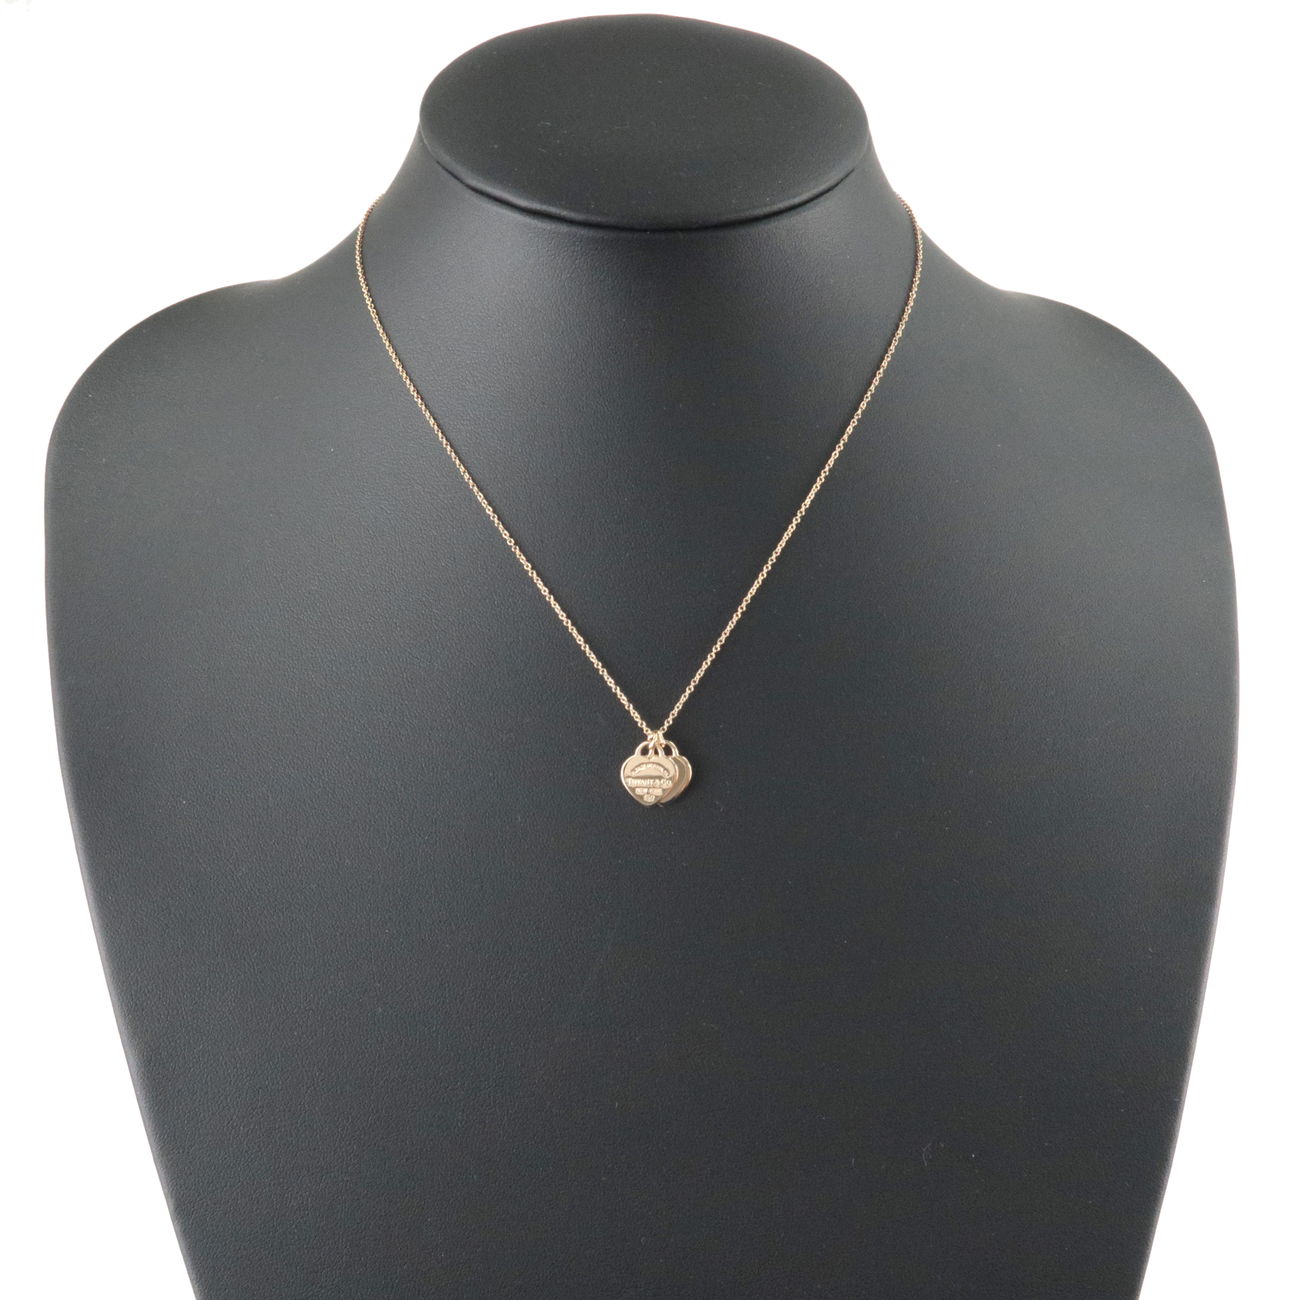 Tiffany&Co. Return to Tiffany Mini Double Heart Tag Necklace K18PG